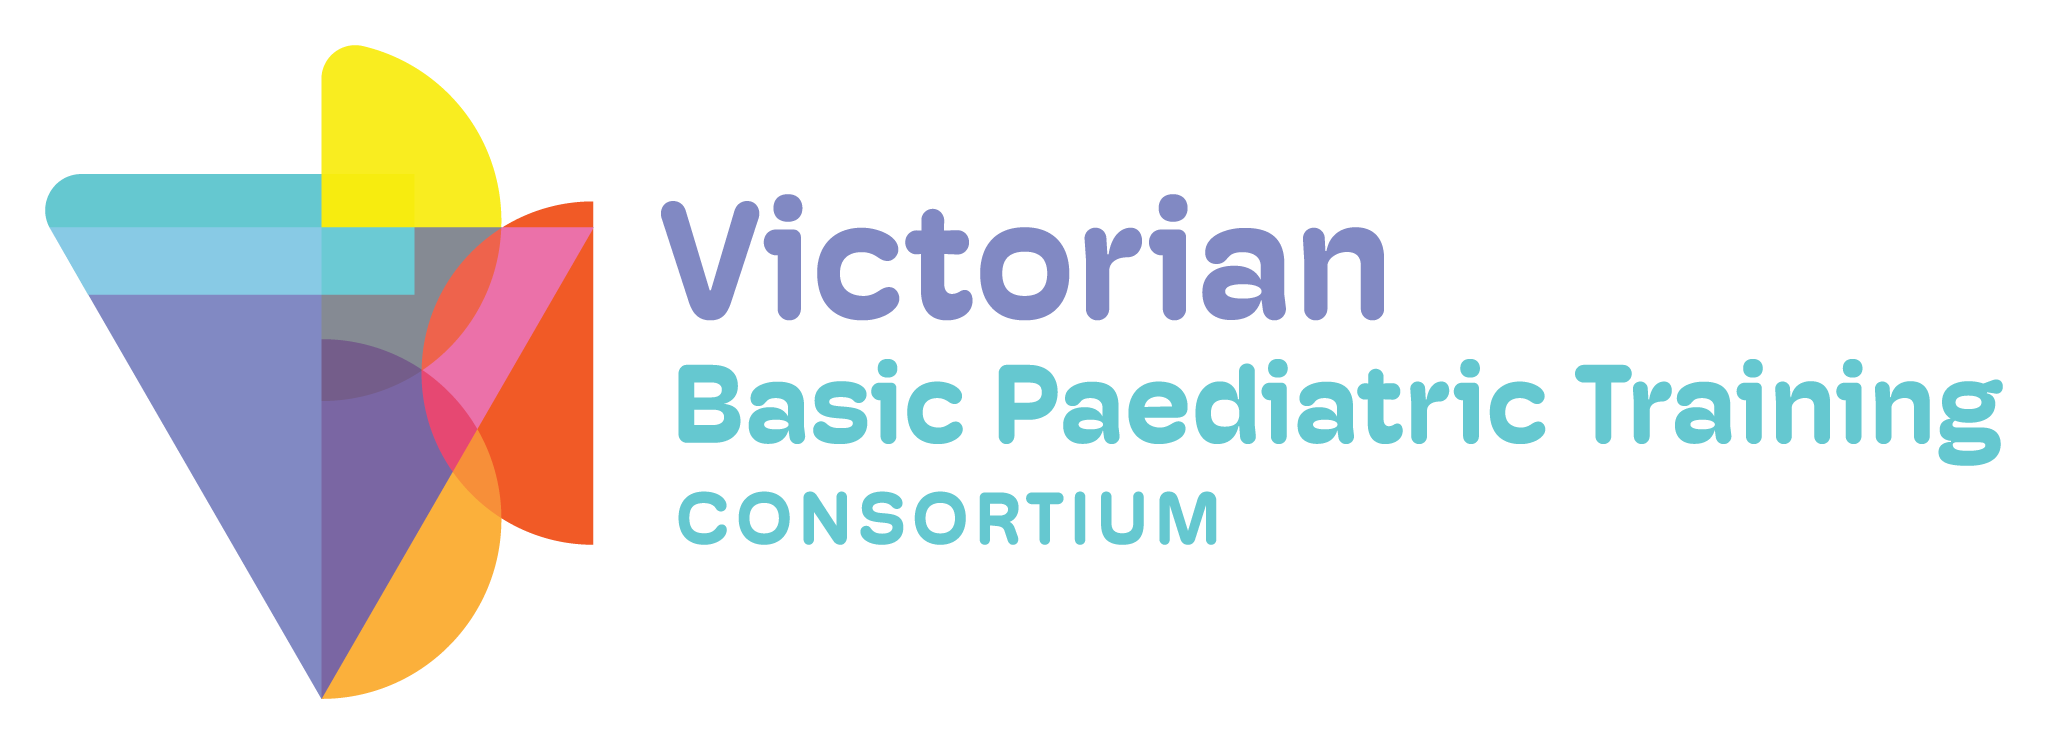 Victorian Basic Paediatric Training Consortium